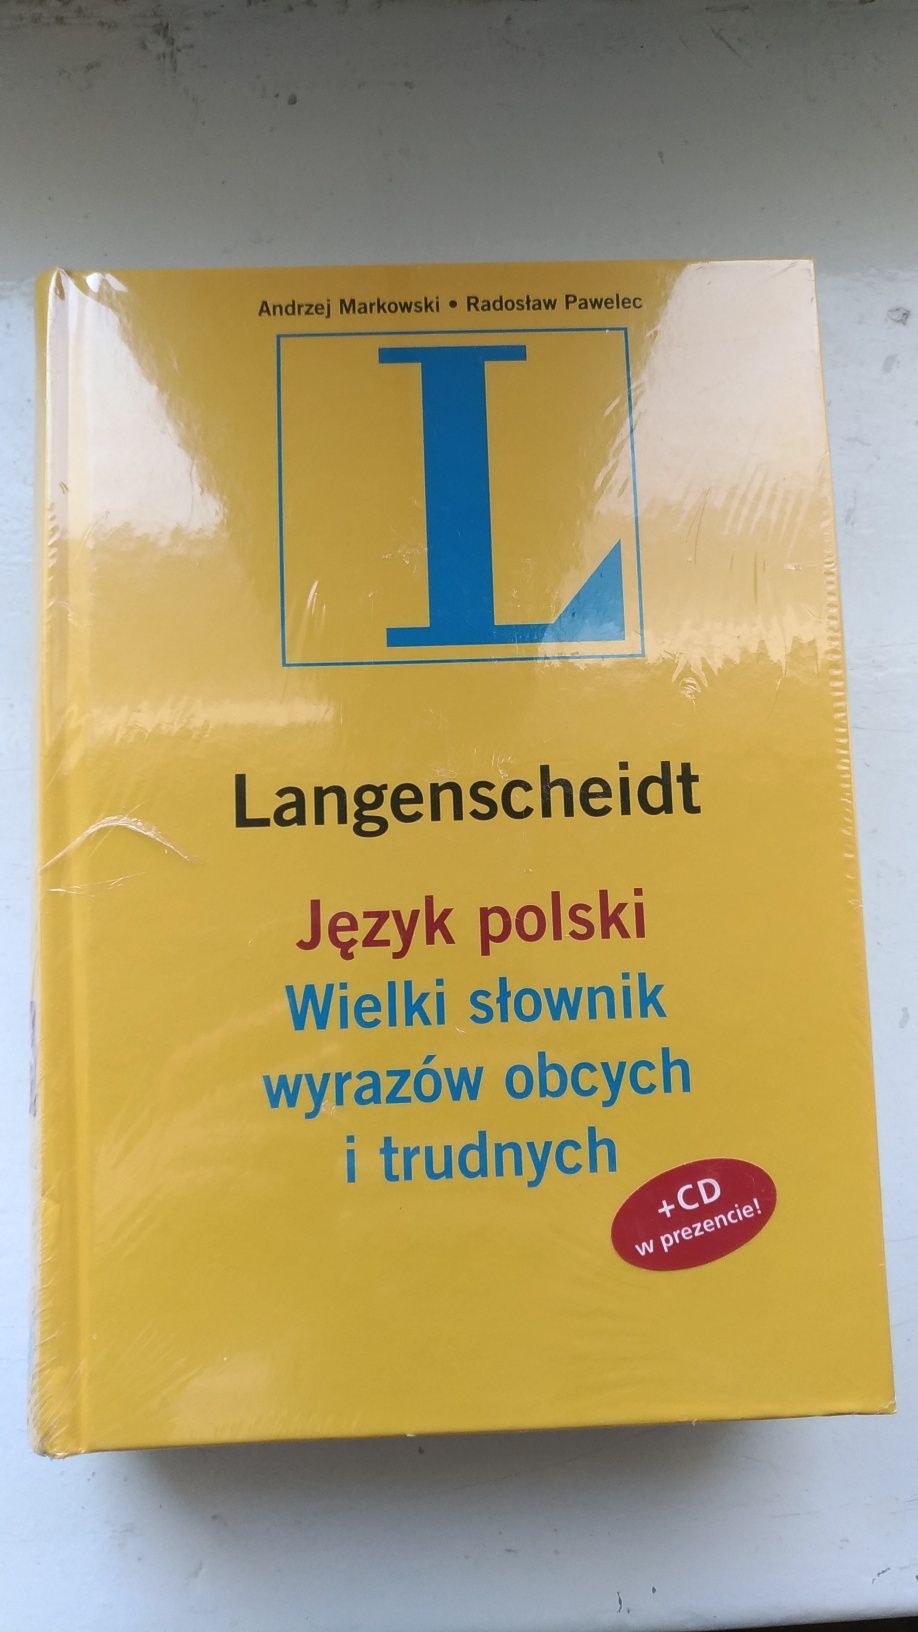 Nowy słownik wyrazów obcych i trudnych Lagenscheidt plus CD